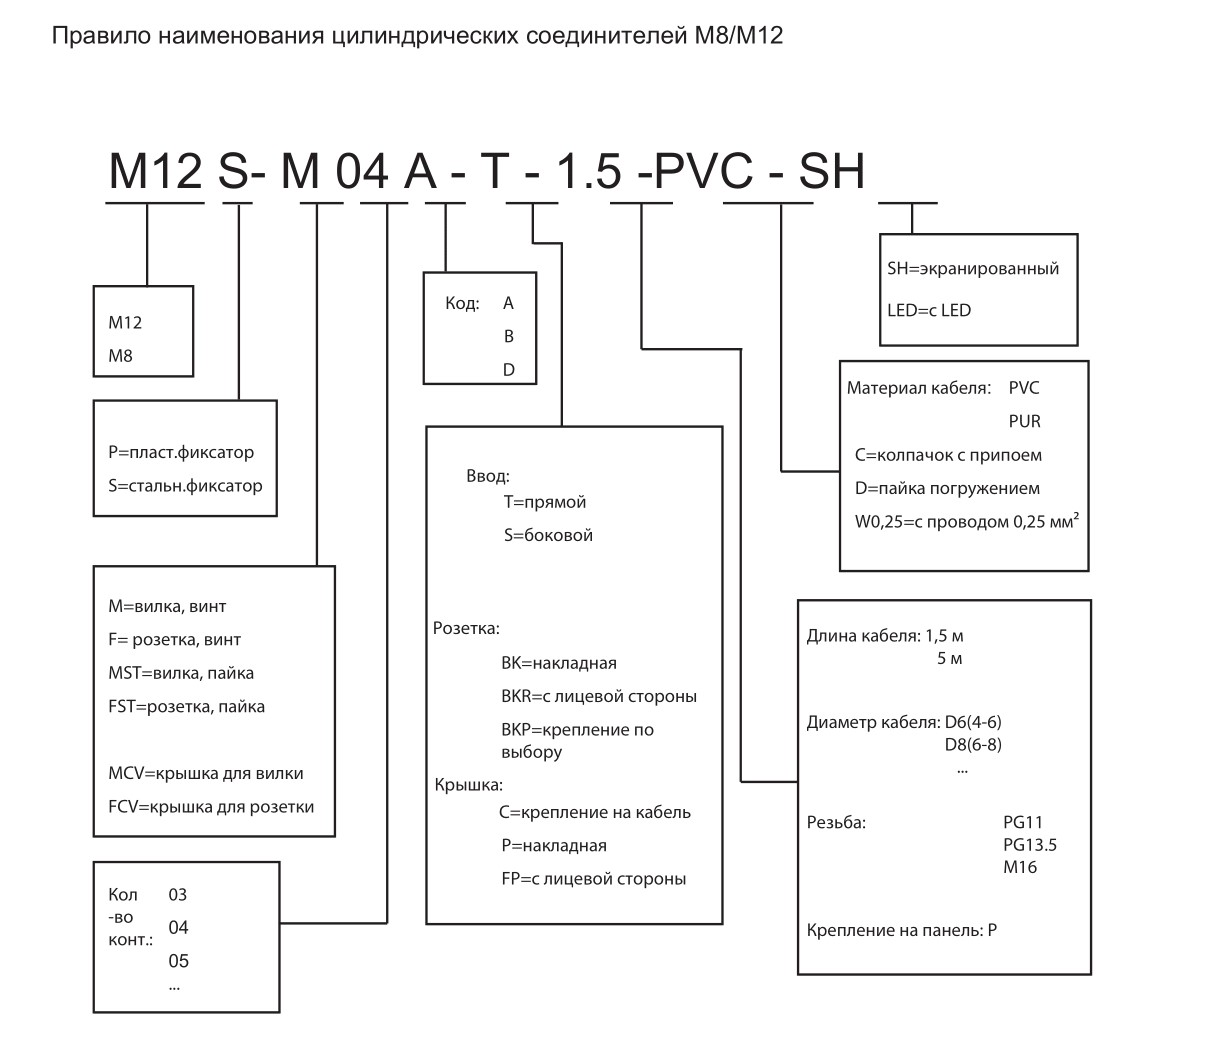 Цилиндрический соединитель-розетка с кабелем M12-F04D-BKR-M16-PFN 1630043024023: Структура обозначения